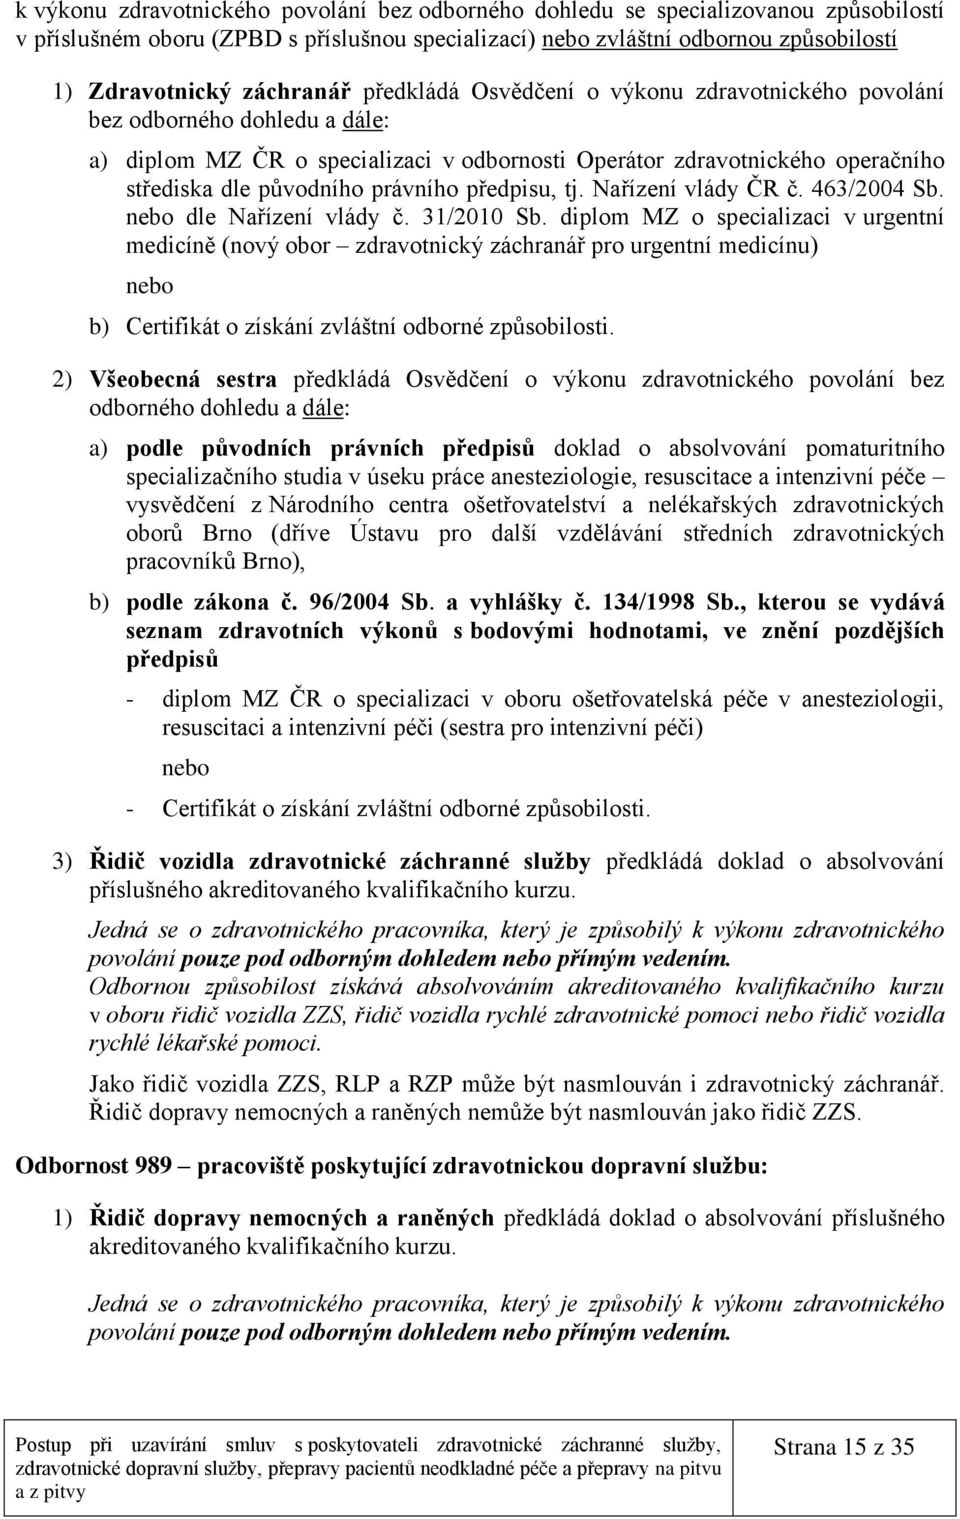 právního předpisu, tj. Nařízení vlády ČR č. 463/2004 Sb. nebo dle Nařízení vlády č. 31/2010 Sb.